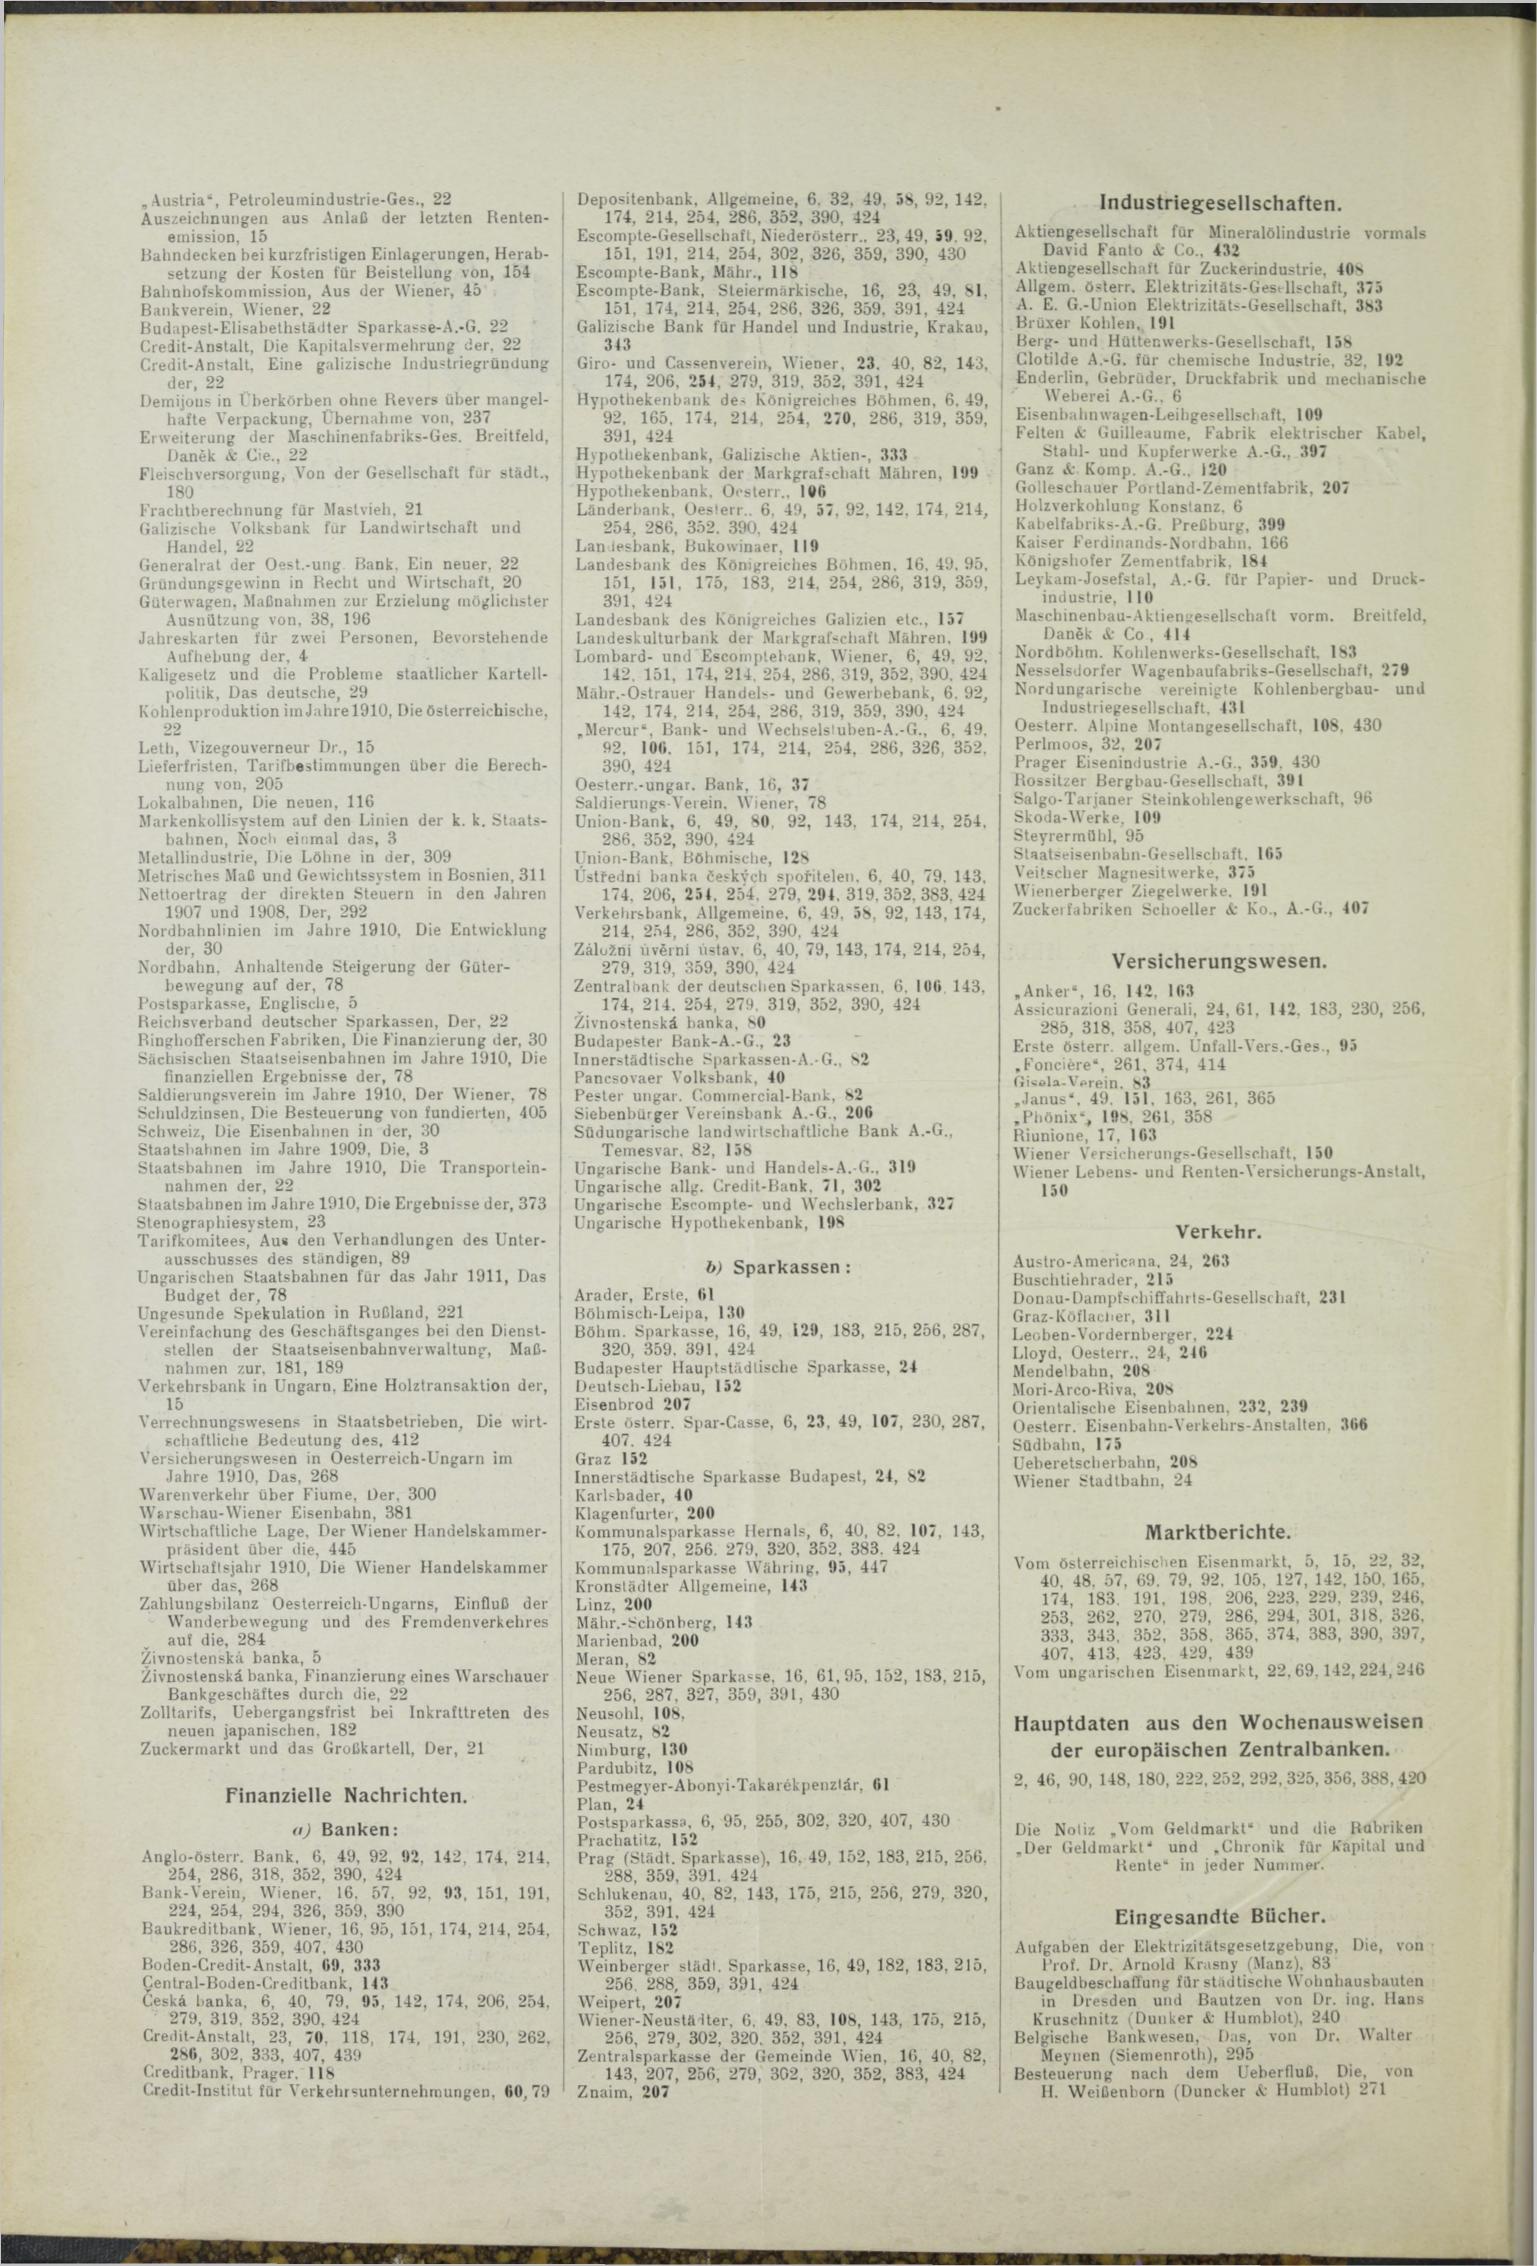 Der Tresor 25.02.1911 - Seite 14